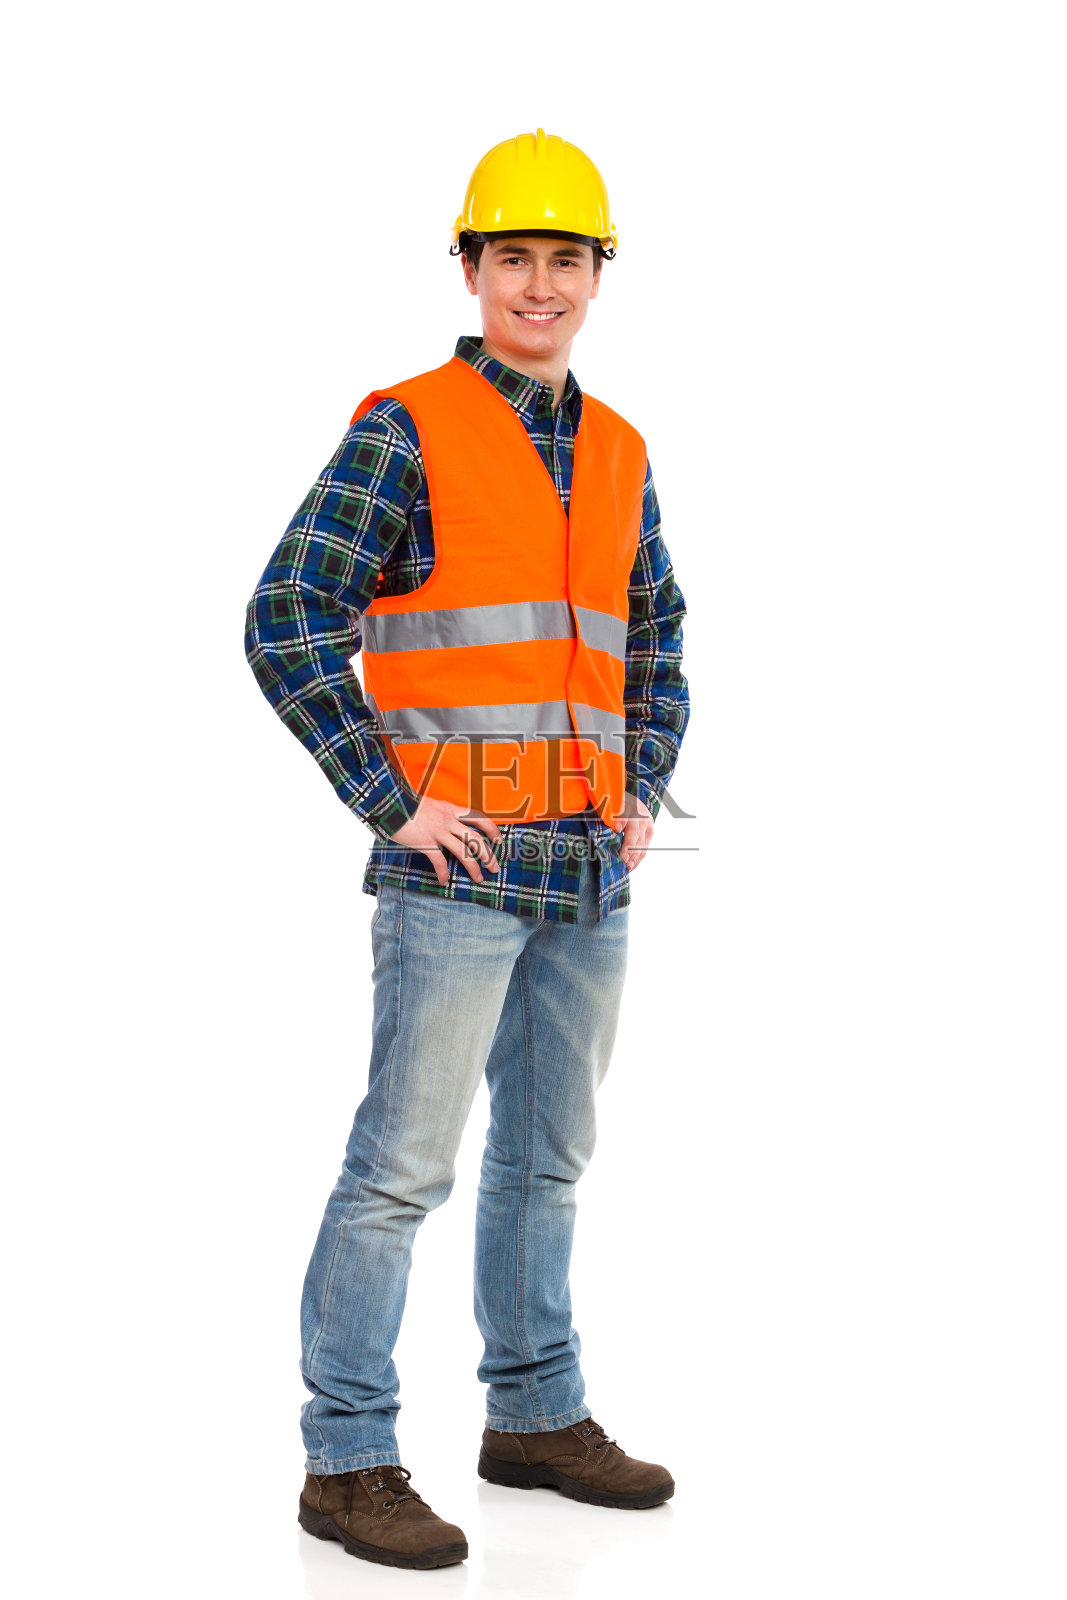 身穿橙色背心、头戴黄色帽子的建筑工人微笑着照片摄影图片